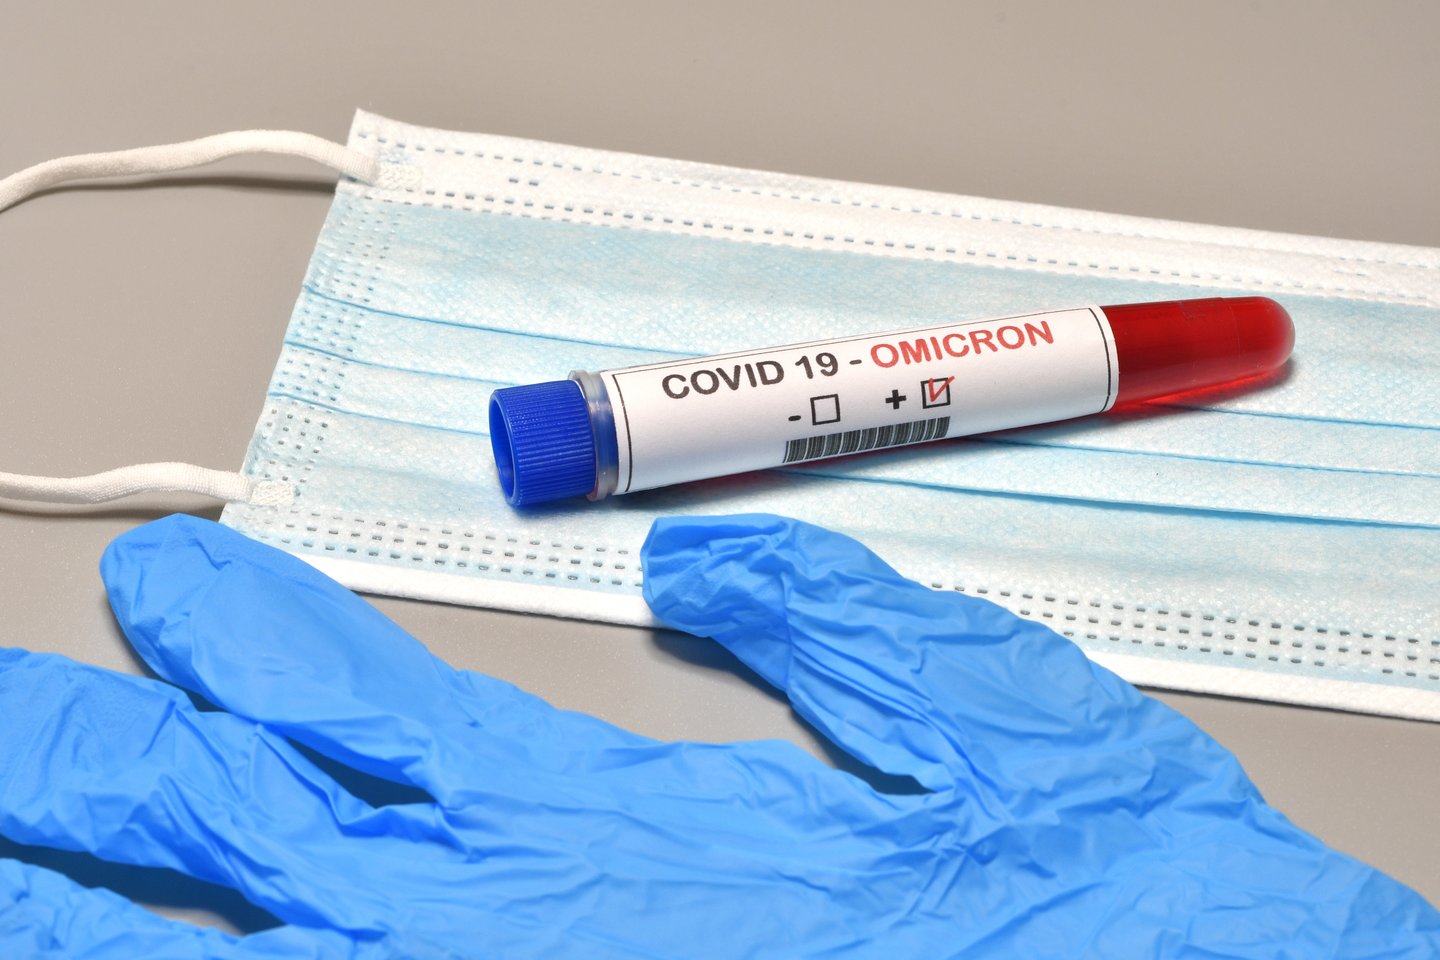  Naujame laboratoriniame tyrime teigiama, kad antikūnai prieš omikron koronaviruso atmainą išlieka stiprūs praėjus keturiems mėnesiams po trečiosios Pfizer/BioNTech vakcinos dozės.<br> 123rf nuotr.